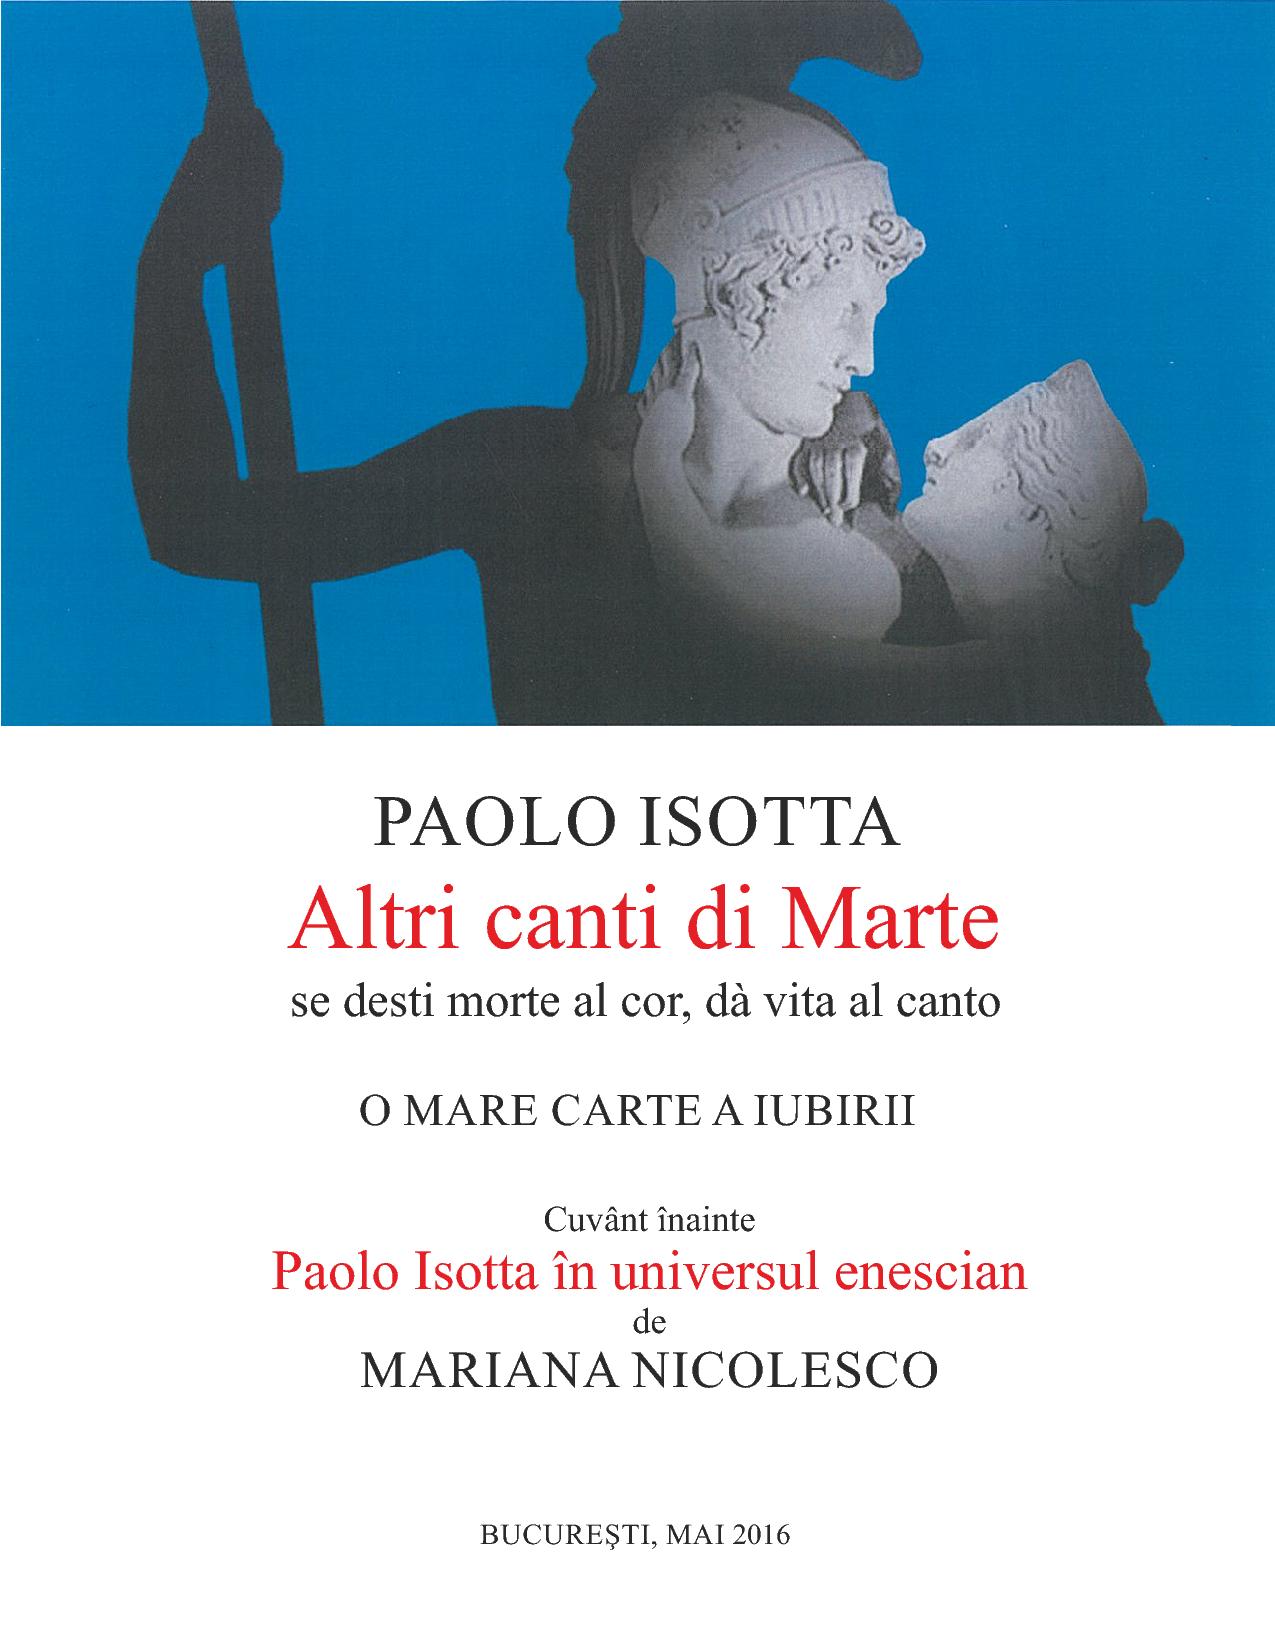 Altri canti di Marte (Paolo Issota)